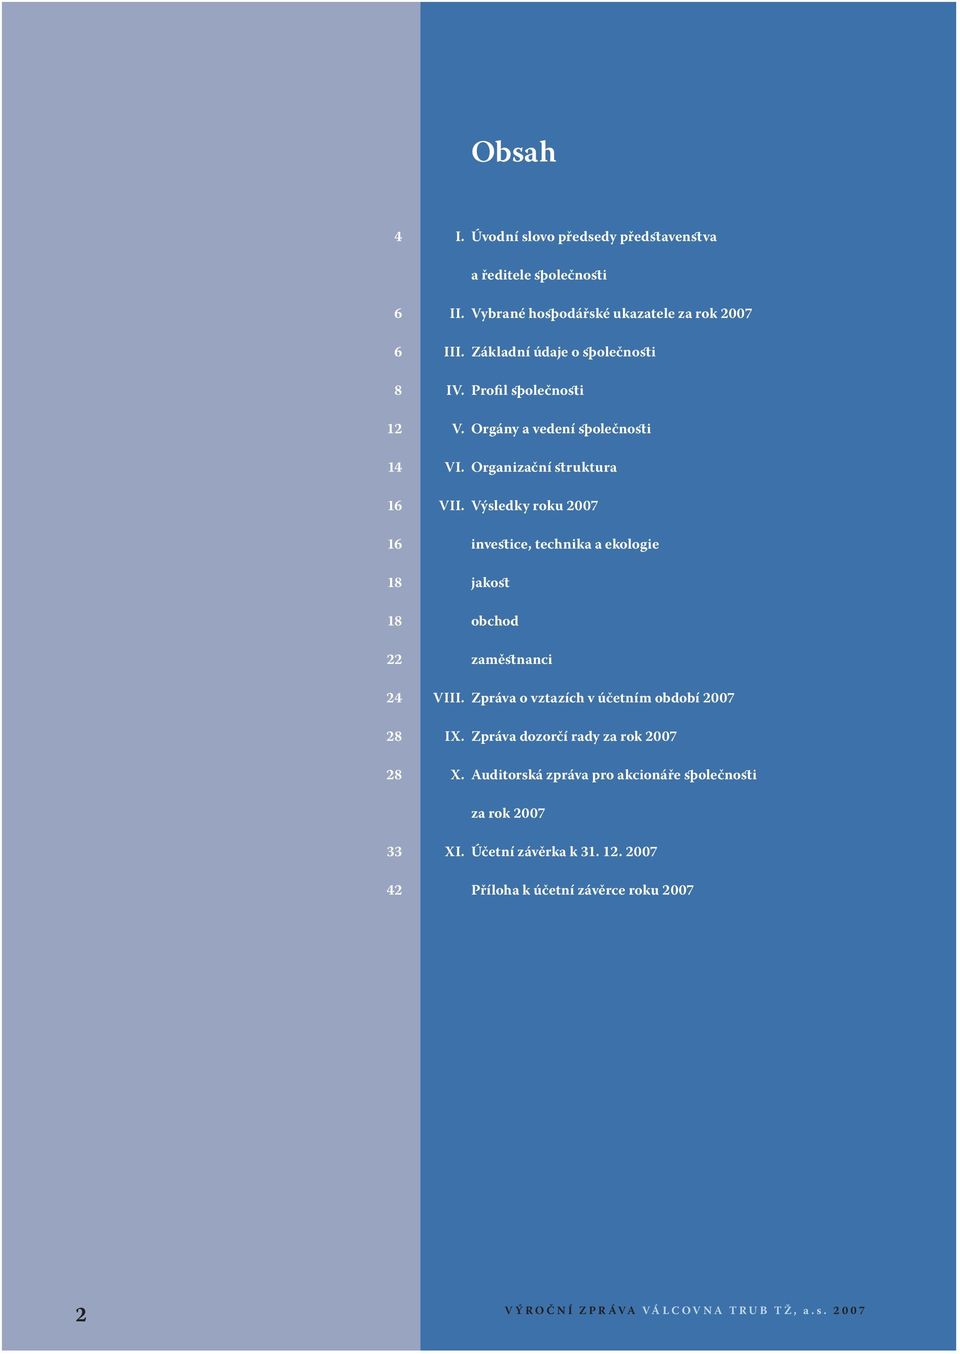 Výsledky roku 2007 16 investice, technika a ekologie 18 jakost 18 obchod 22 zaměstnanci 24 VIII. Zpráva o vztazích v účetním období 2007 28 IX.